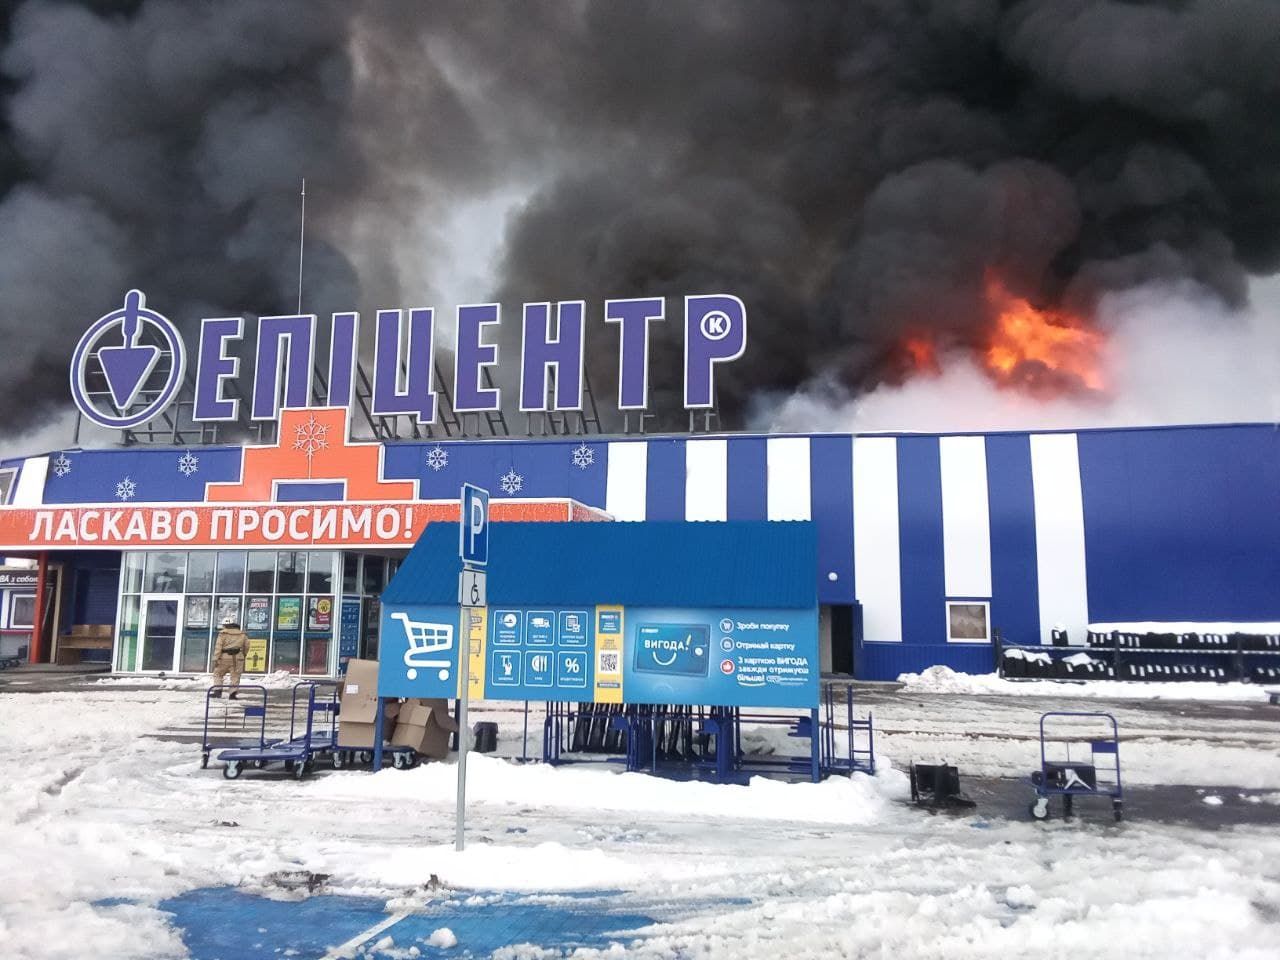 Пожар в Эпицентре в Первомайске 2.02.2021: видео, как все начиналось